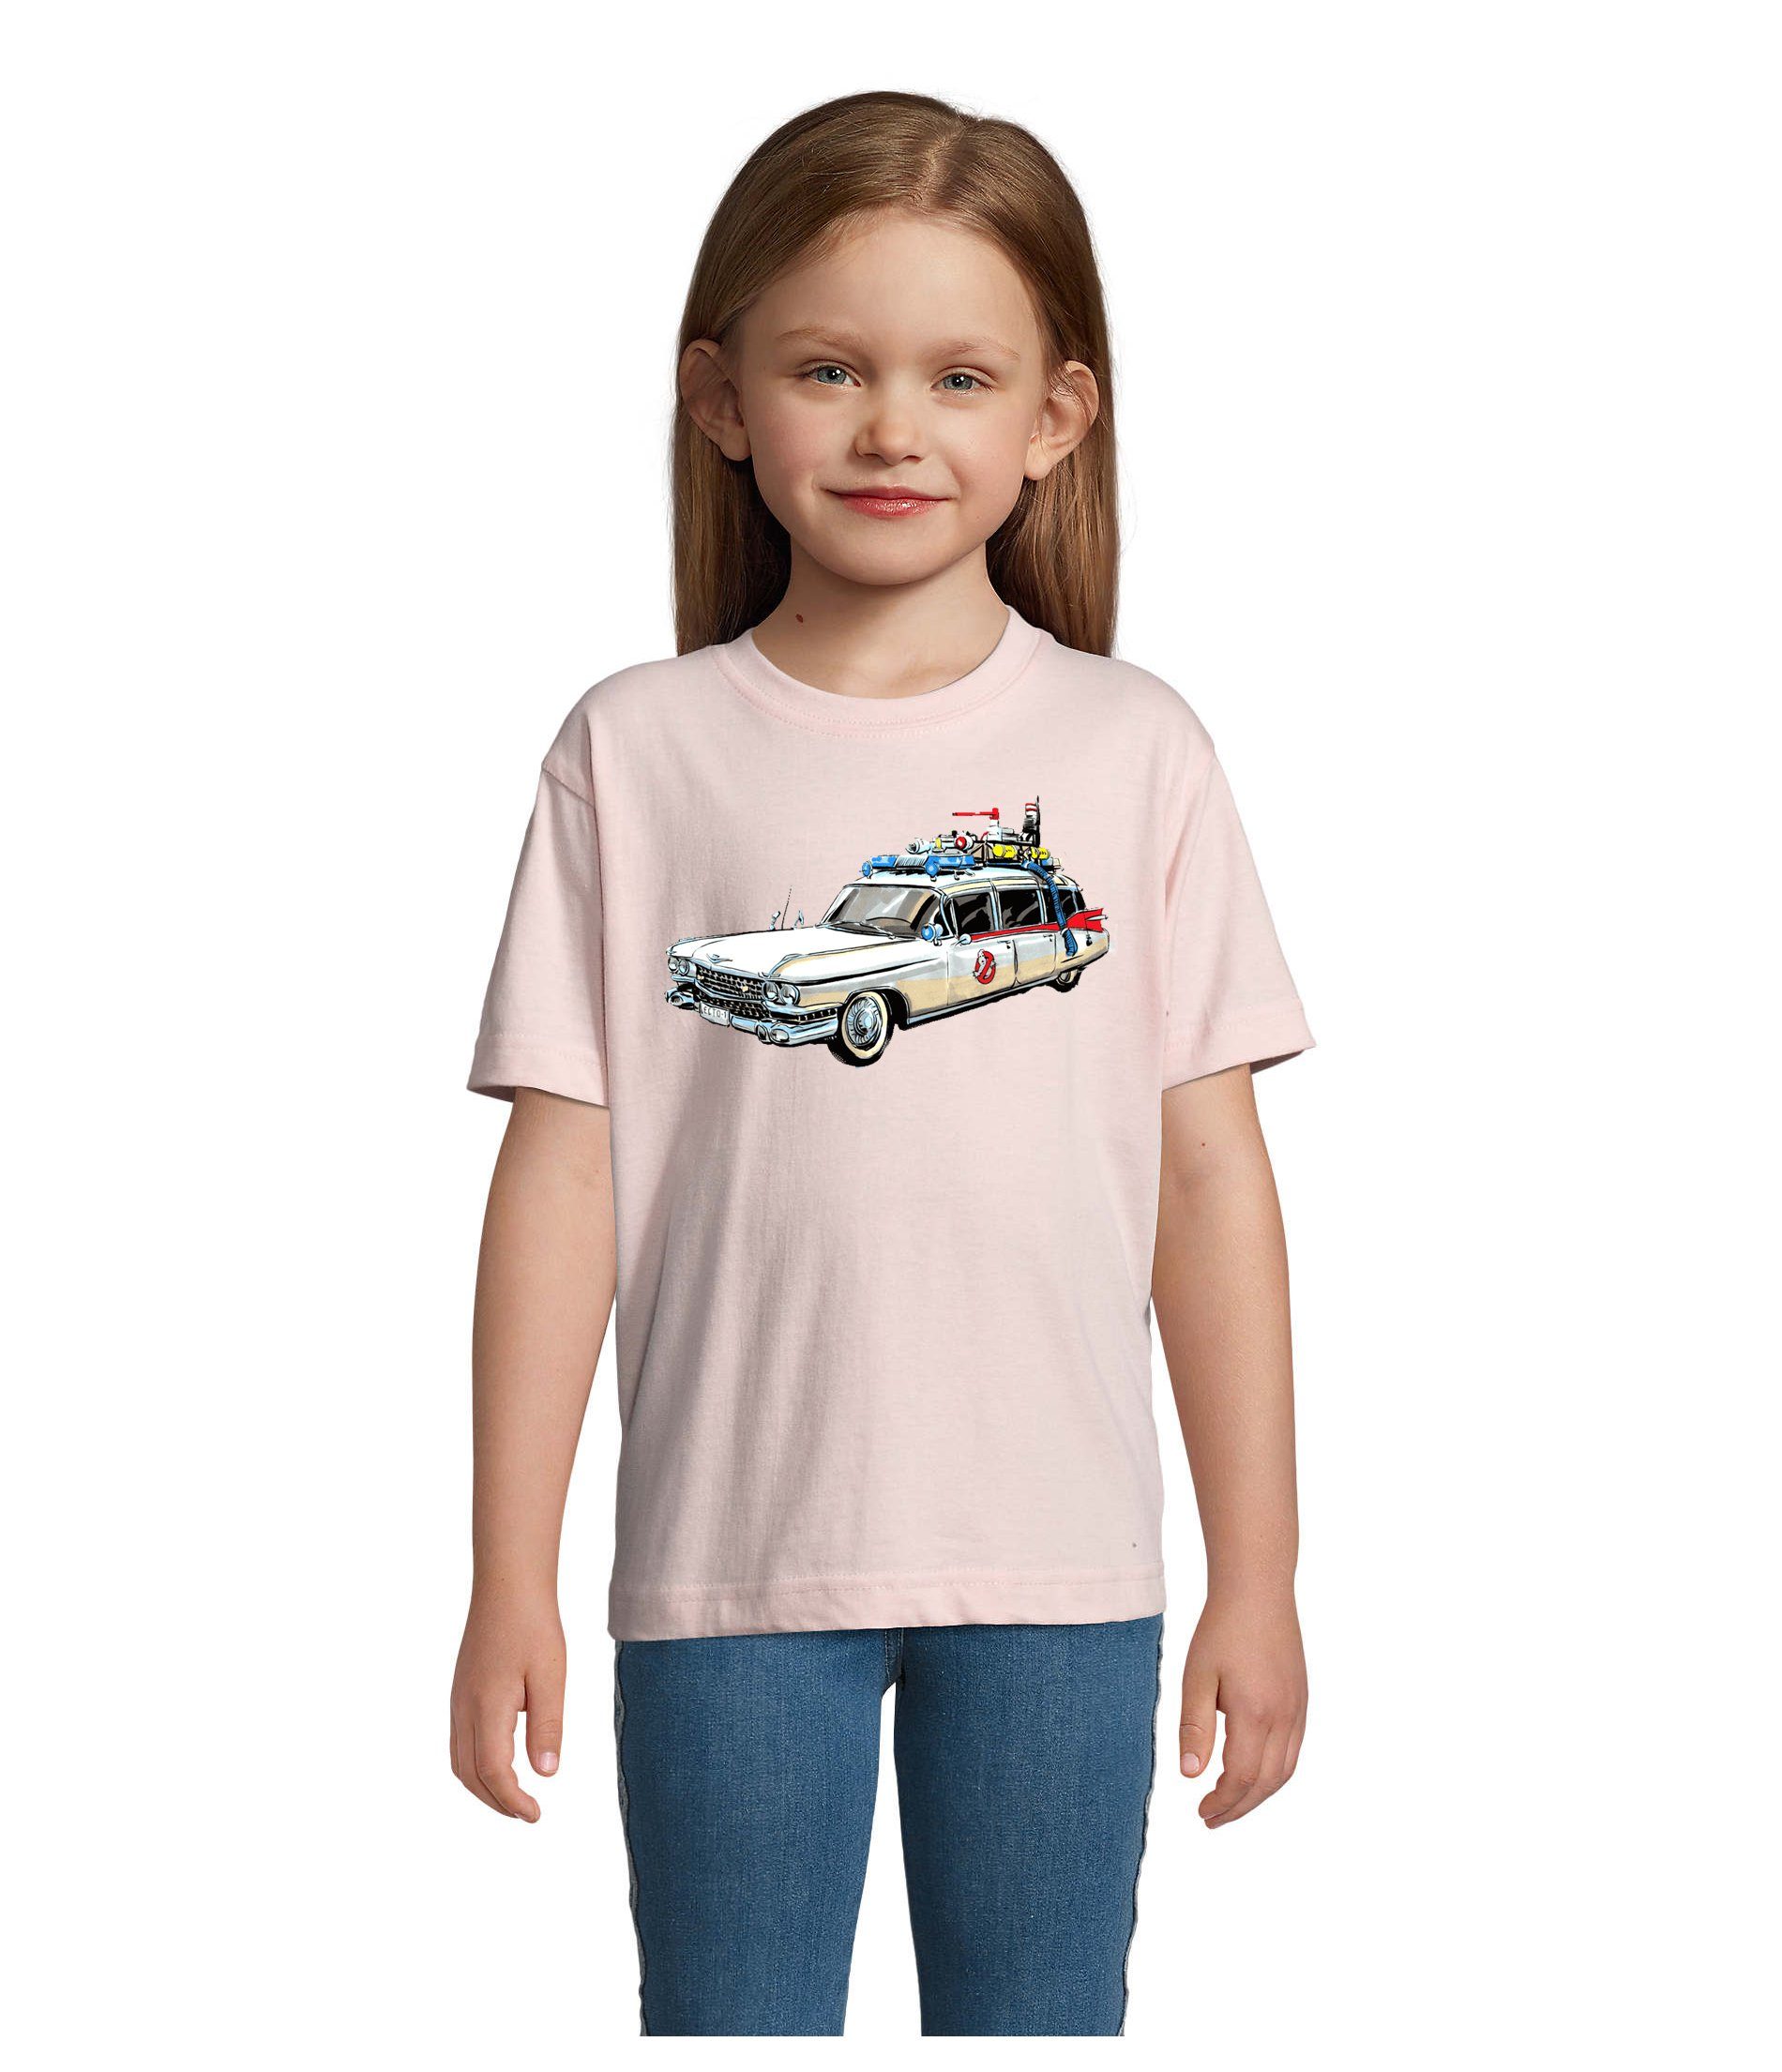 Blondie & Brownie T-Shirt Kinder Jungen & Mädchen Ghostbusters Auto Geisterjäger Geister Film in vielen Farben Rosa